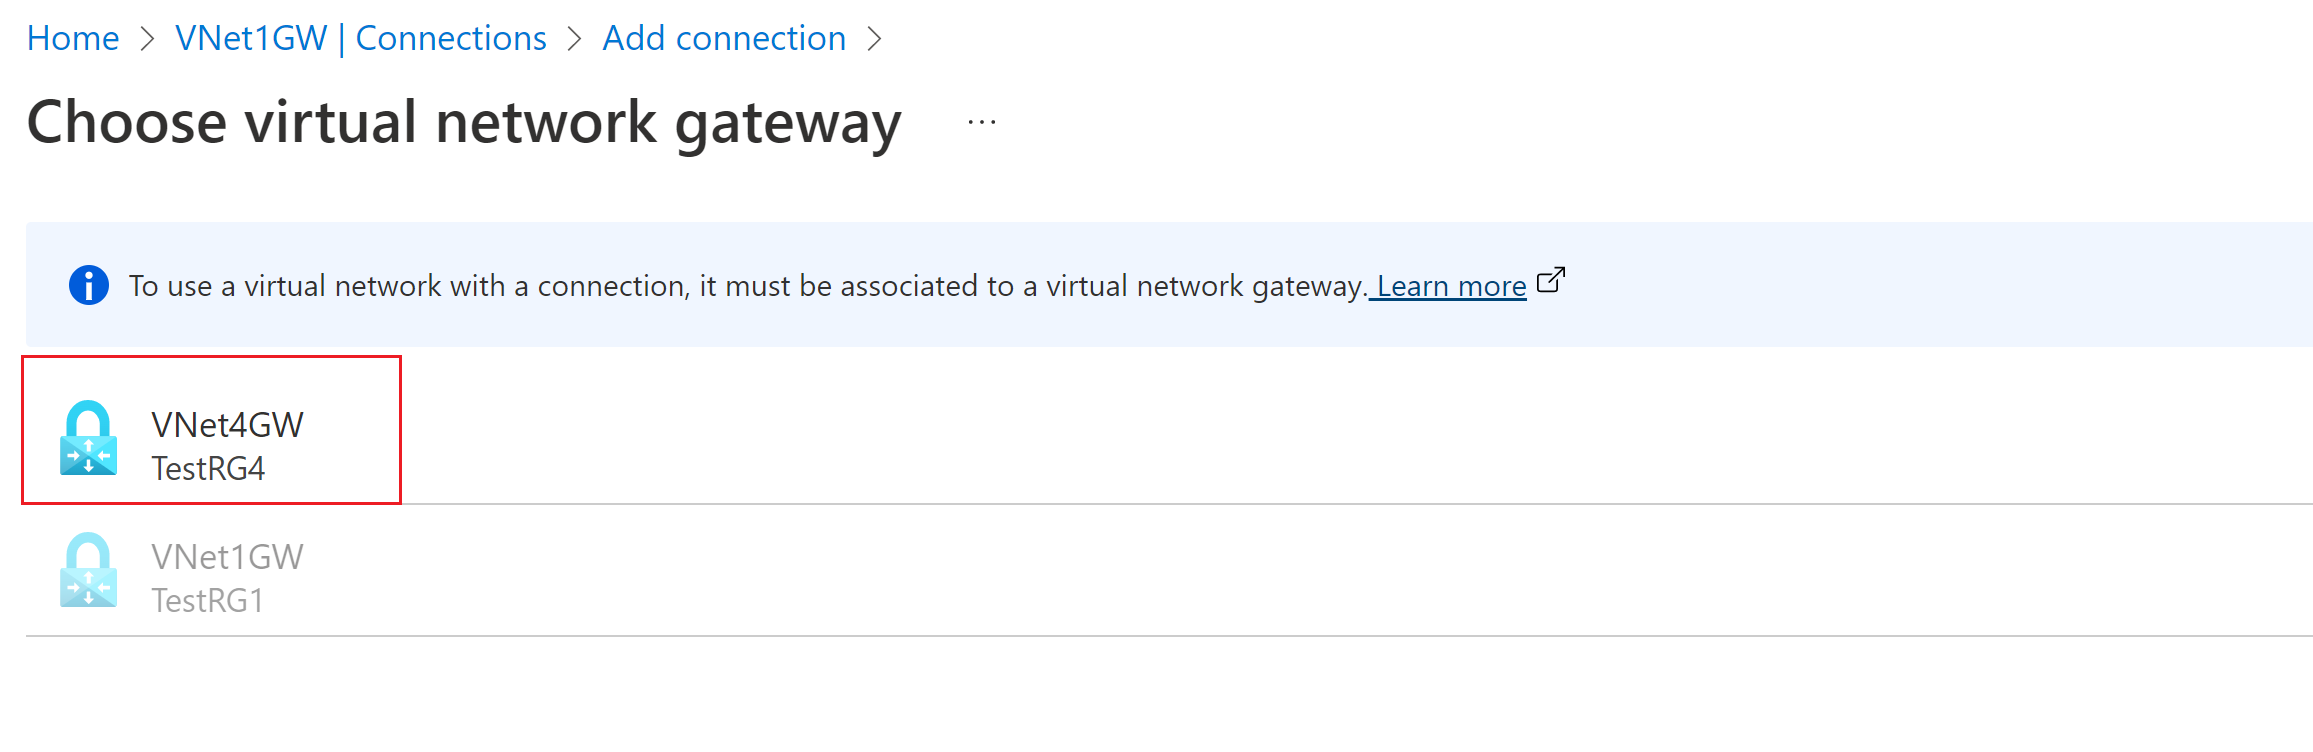 Schermopname van de pagina Een virtuele netwerkgateway kiezen met een andere gateway geselecteerd.